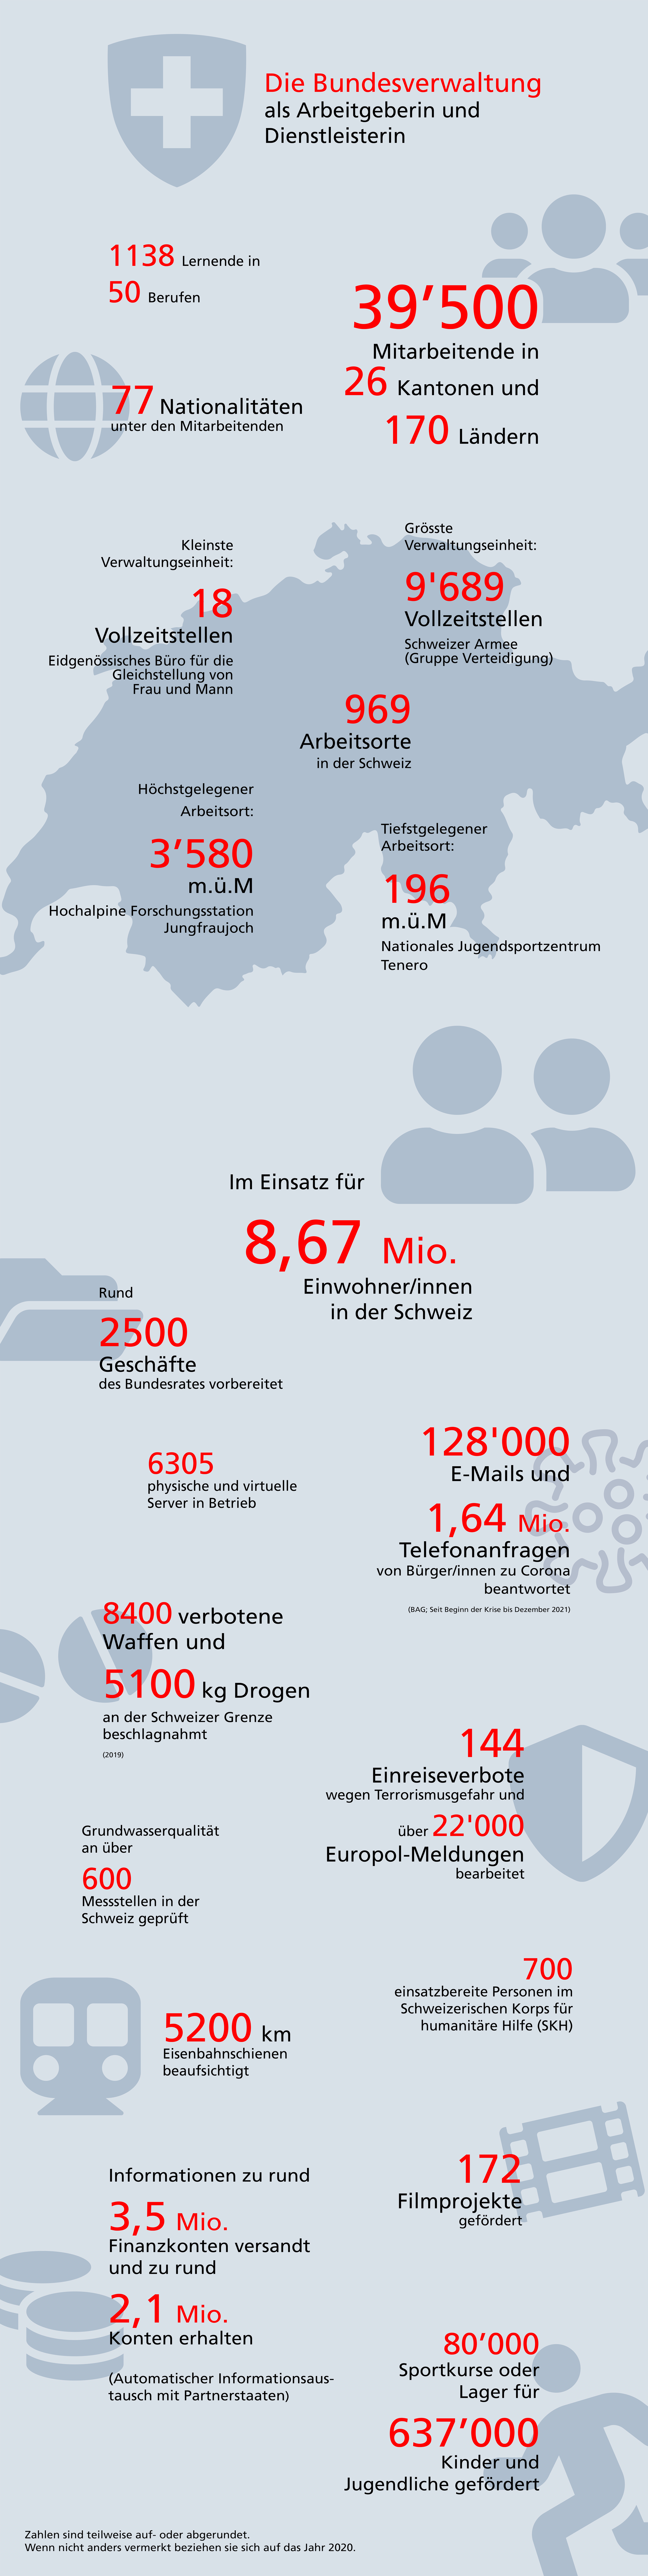 Infografik mit eindrücklichen Kennzahlen zur Bundesverwaltung als Arbeitgeberin und Dienstleisterin.